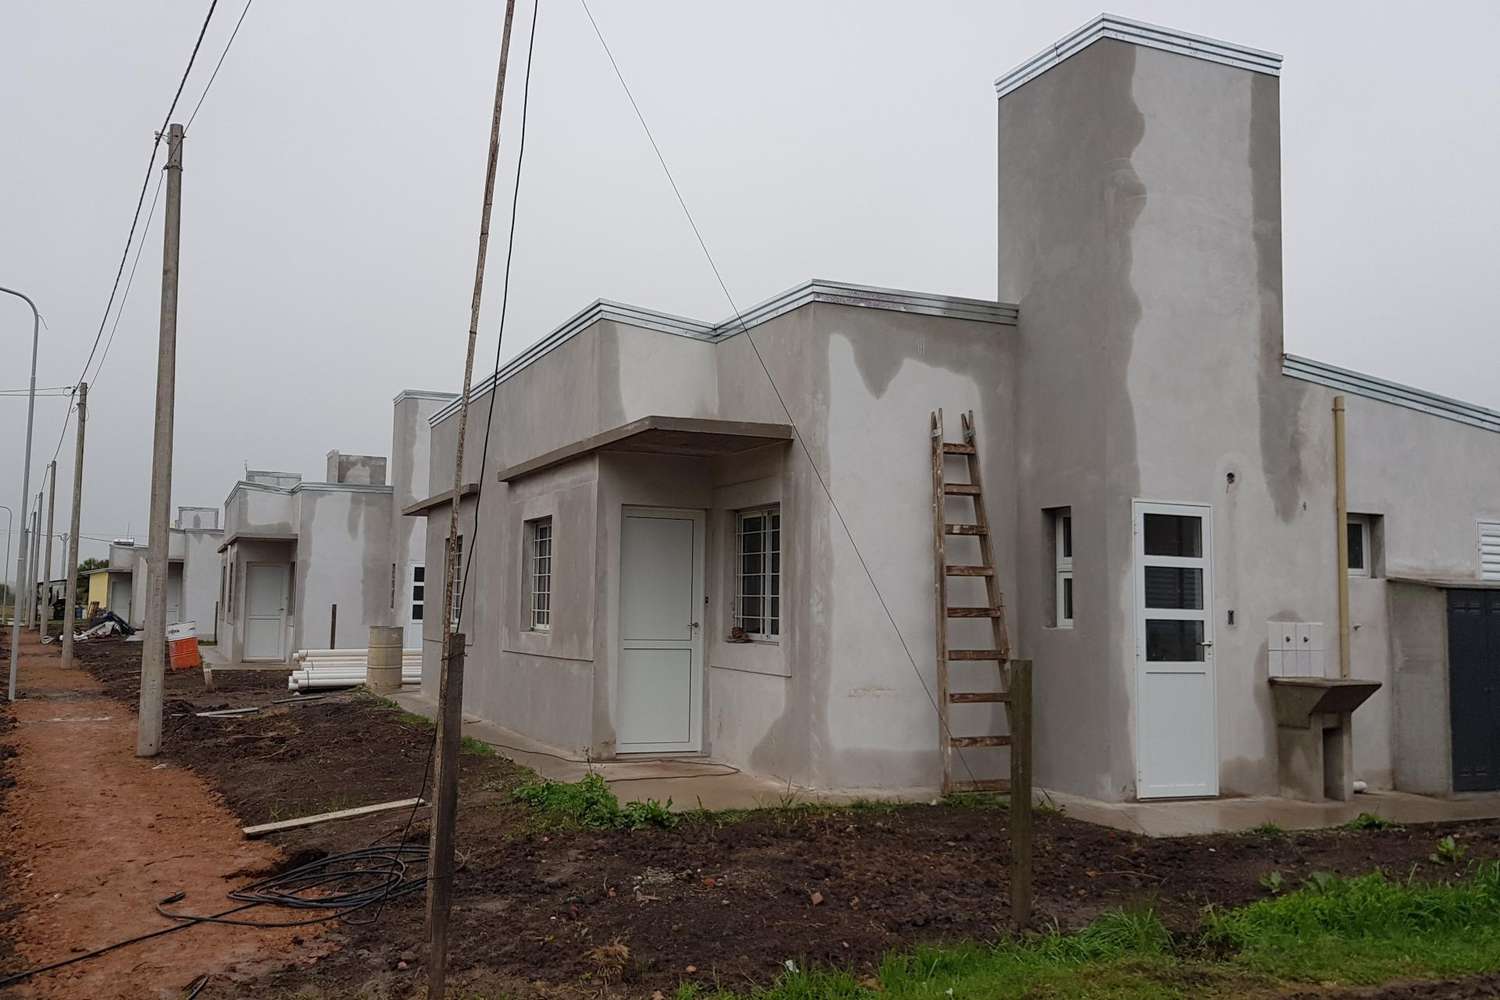 Provincia construye más de 100 viviendas en Gualeguaychú, Larroque y San Antonio